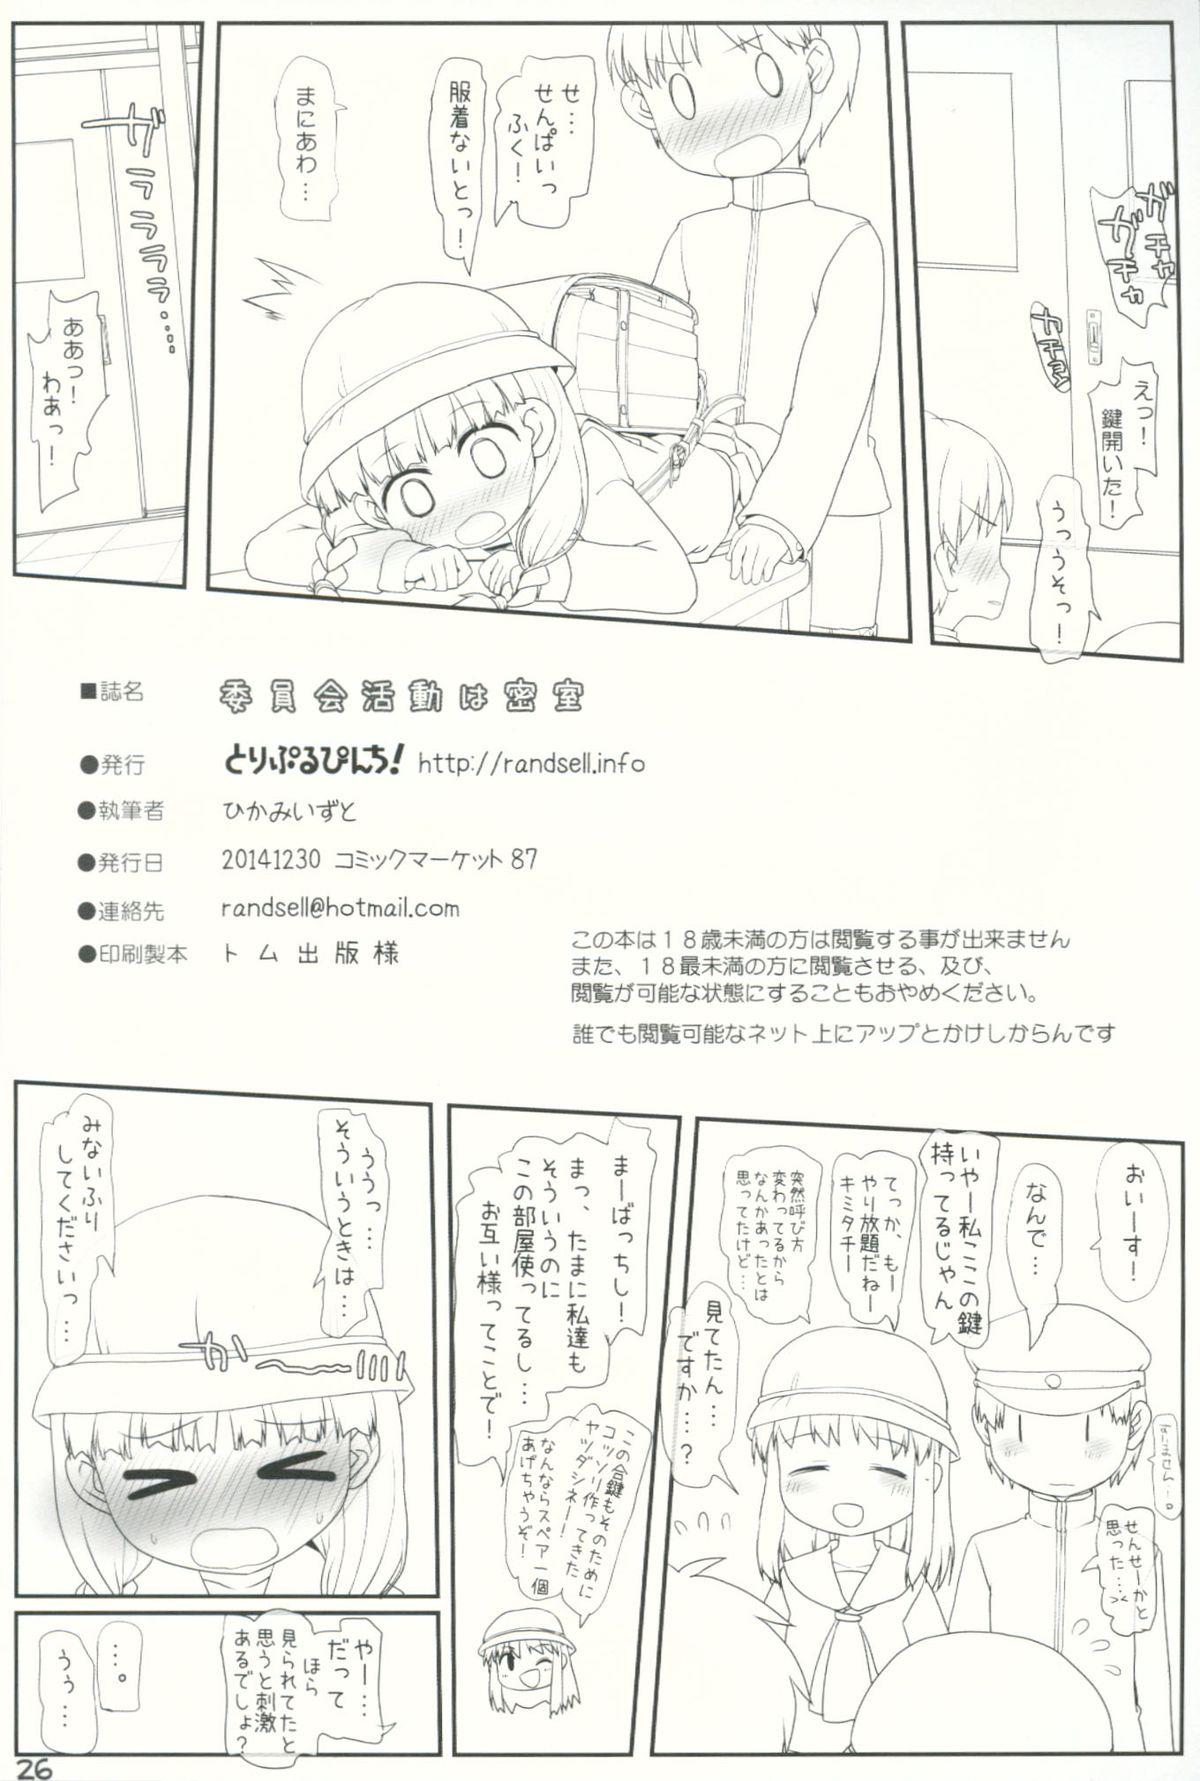 Mofos Iinkai Katsudou wa Misshitsu Pauzudo - Page 25